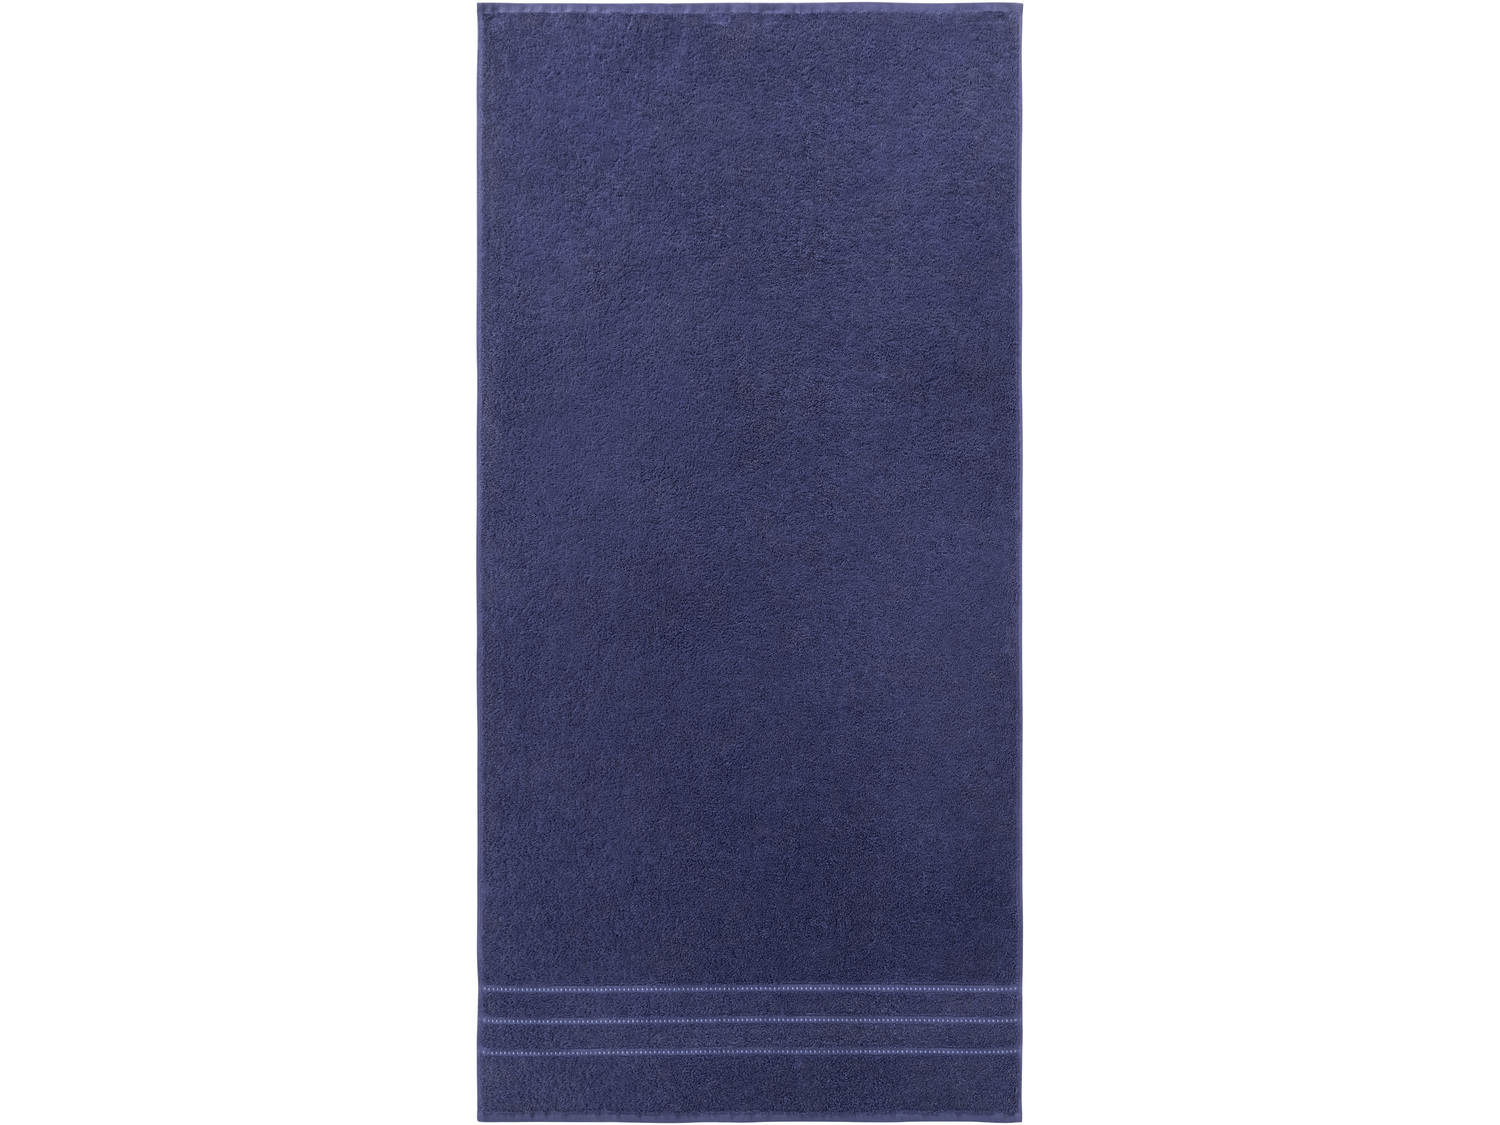 Ręcznik frotté 70 x 140 cm Miomare, cena 19,99 PLN 
- ozdobna bordiura
- 500 g/m2
- ...